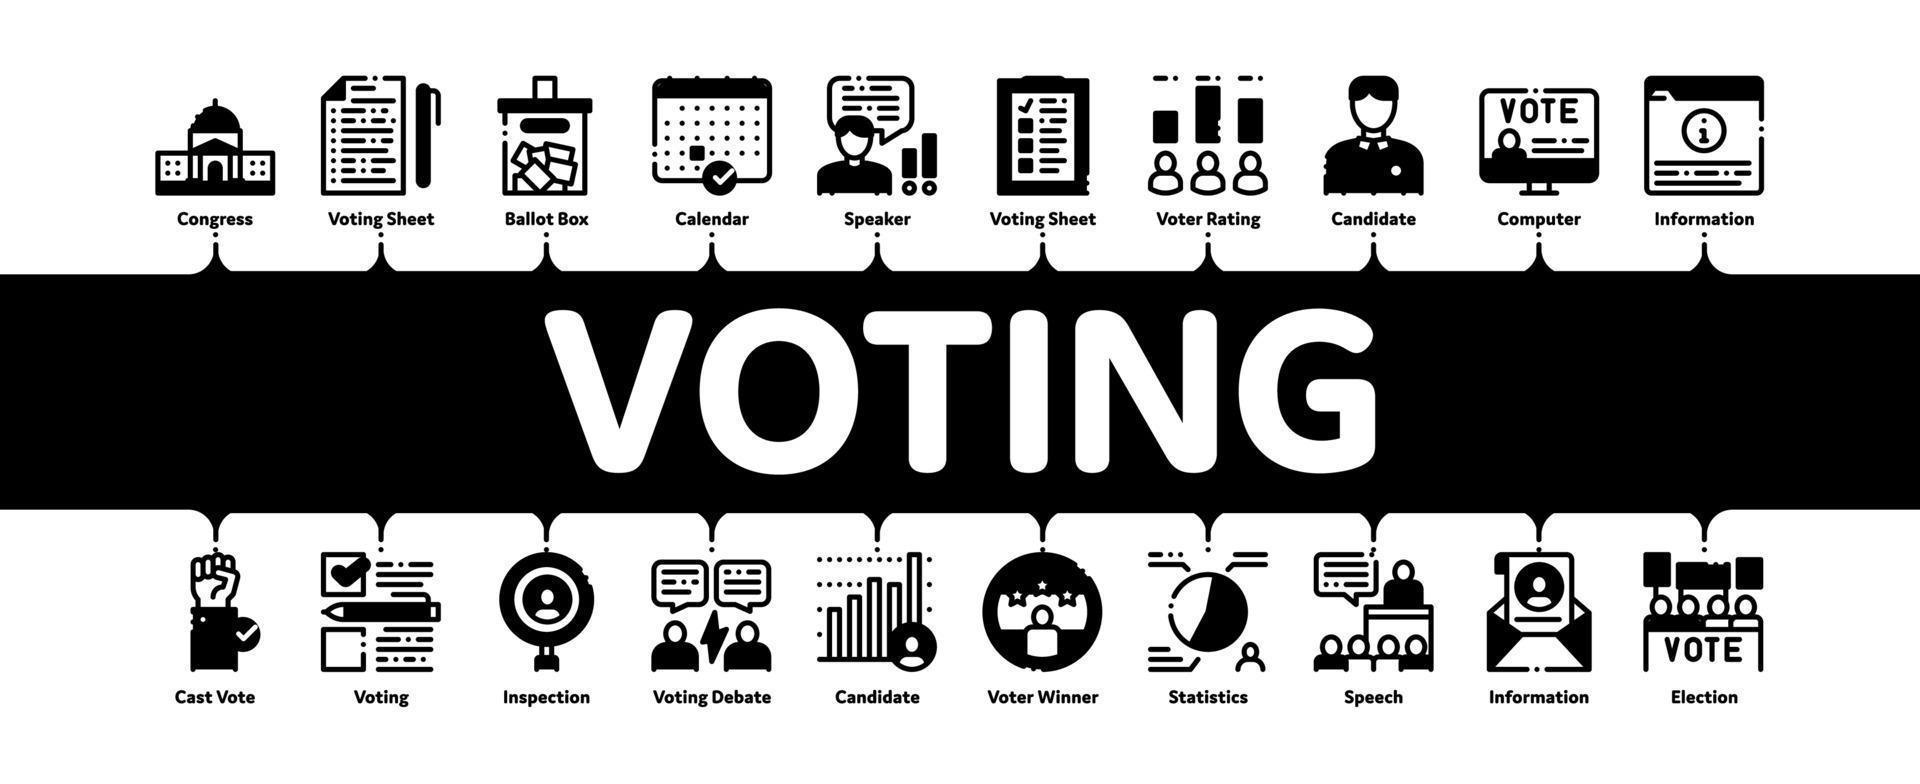 vector de banner infográfico mínimo de votación y elección